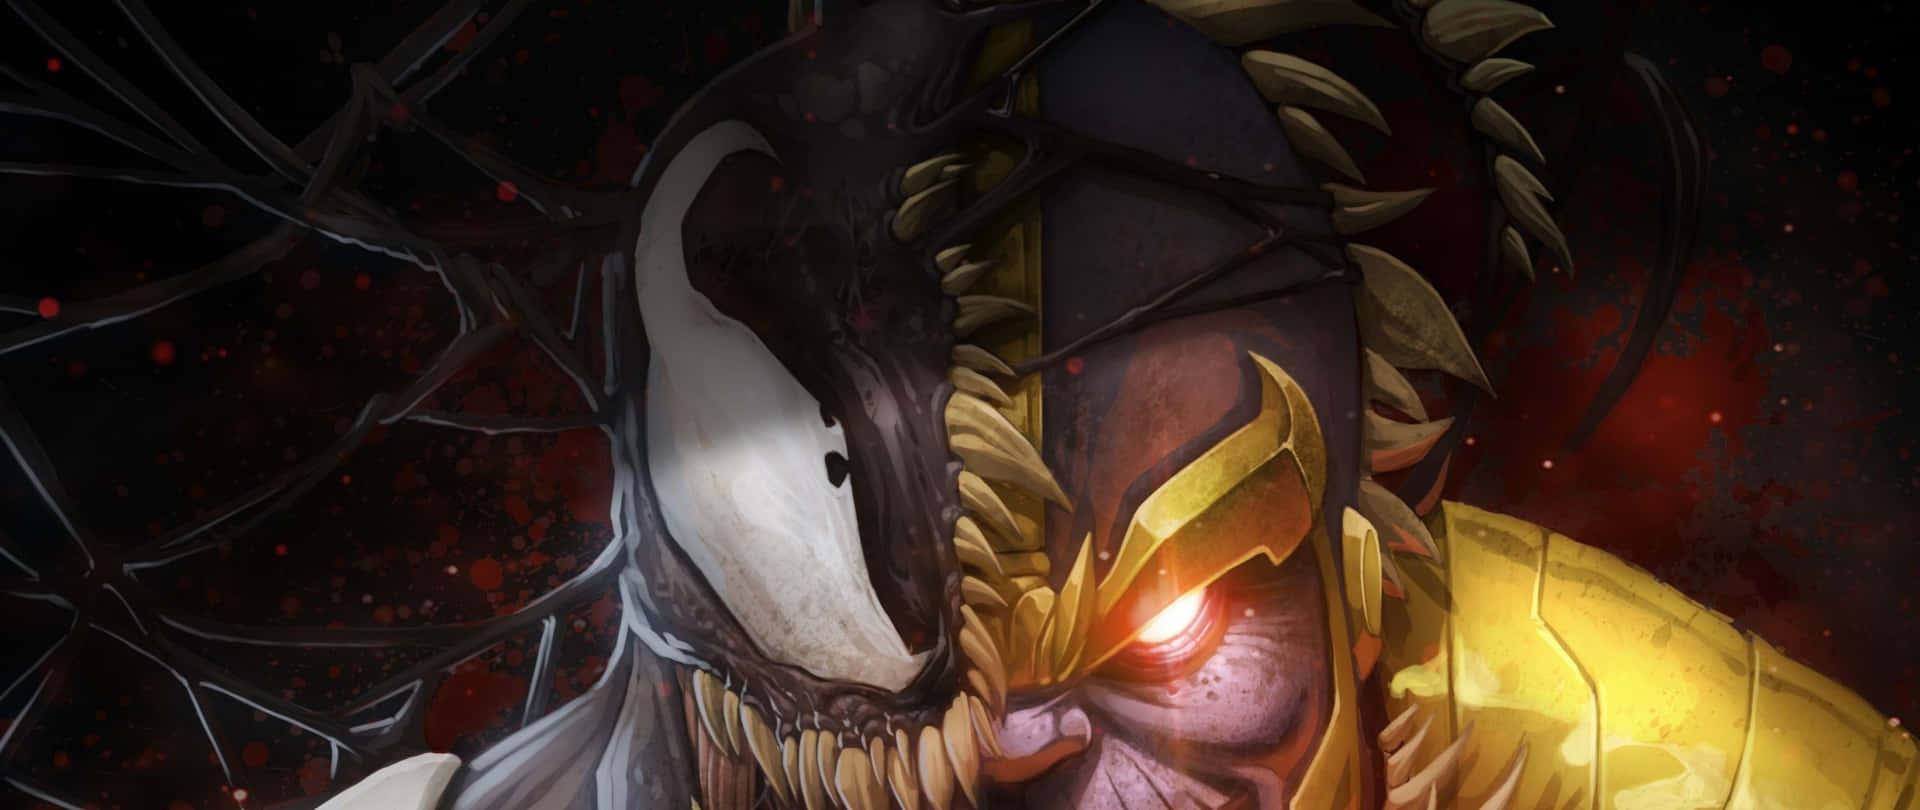 2560 X 1080 Marvel Comics Venom Wallpaper